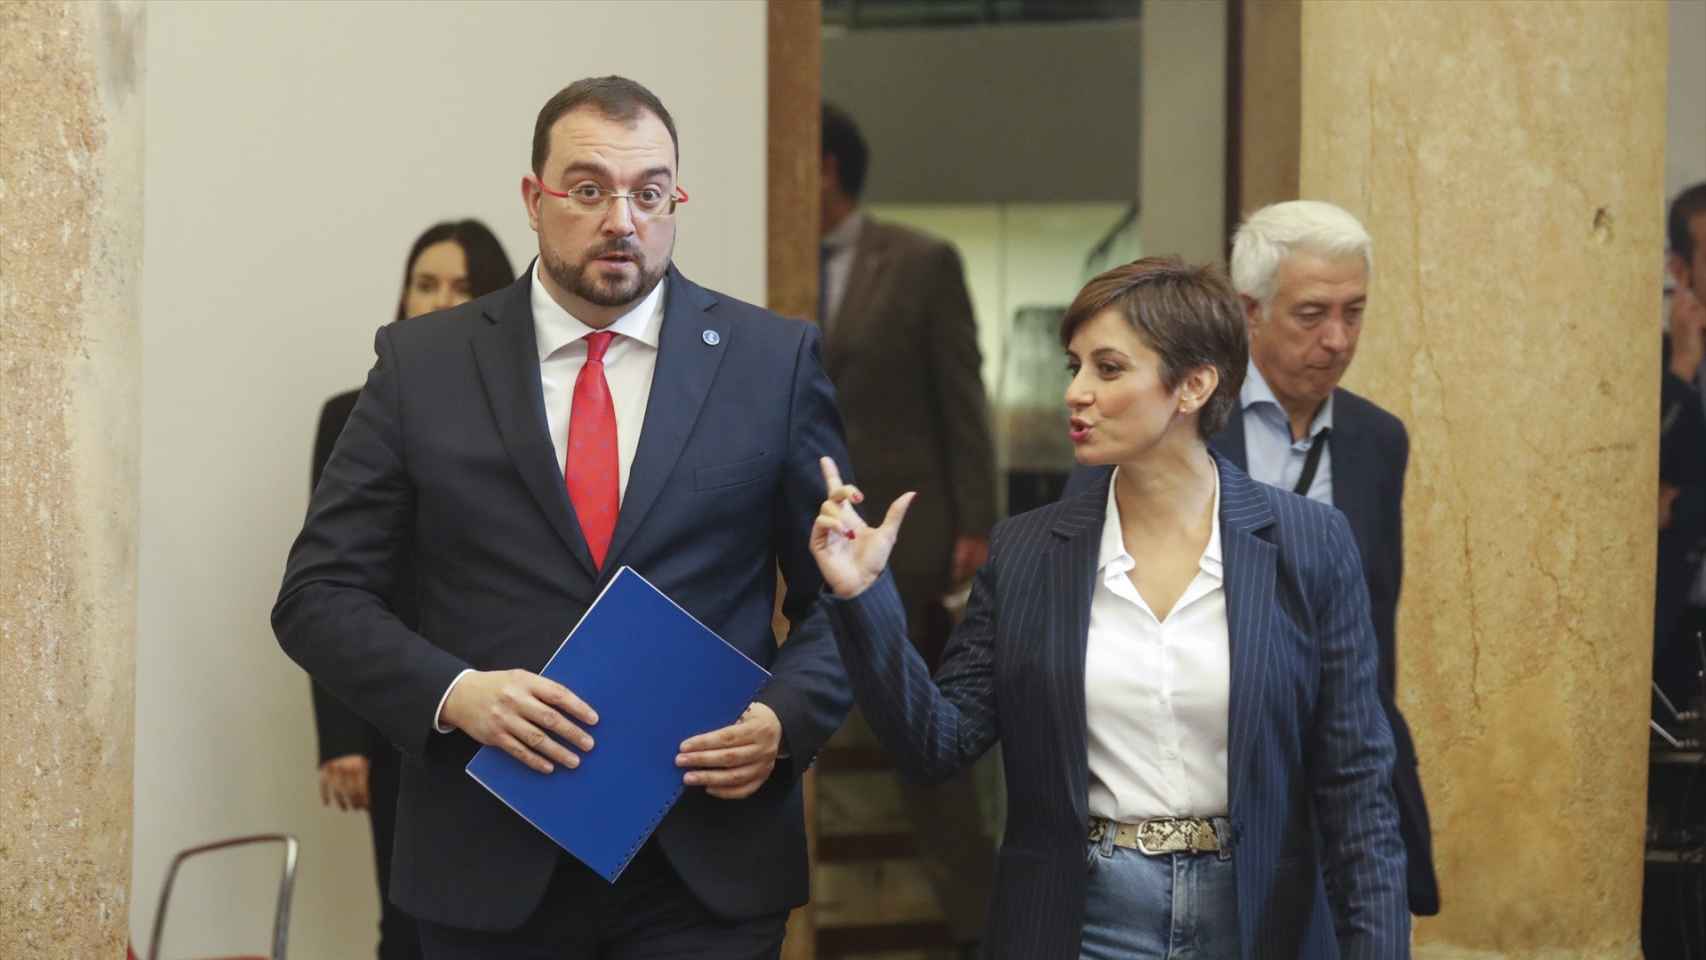 La ministra de Vivienda, Isabel Rodríguez, junto con el presidente de Asturias, Adrián Barbón, en una imagen de archivo.